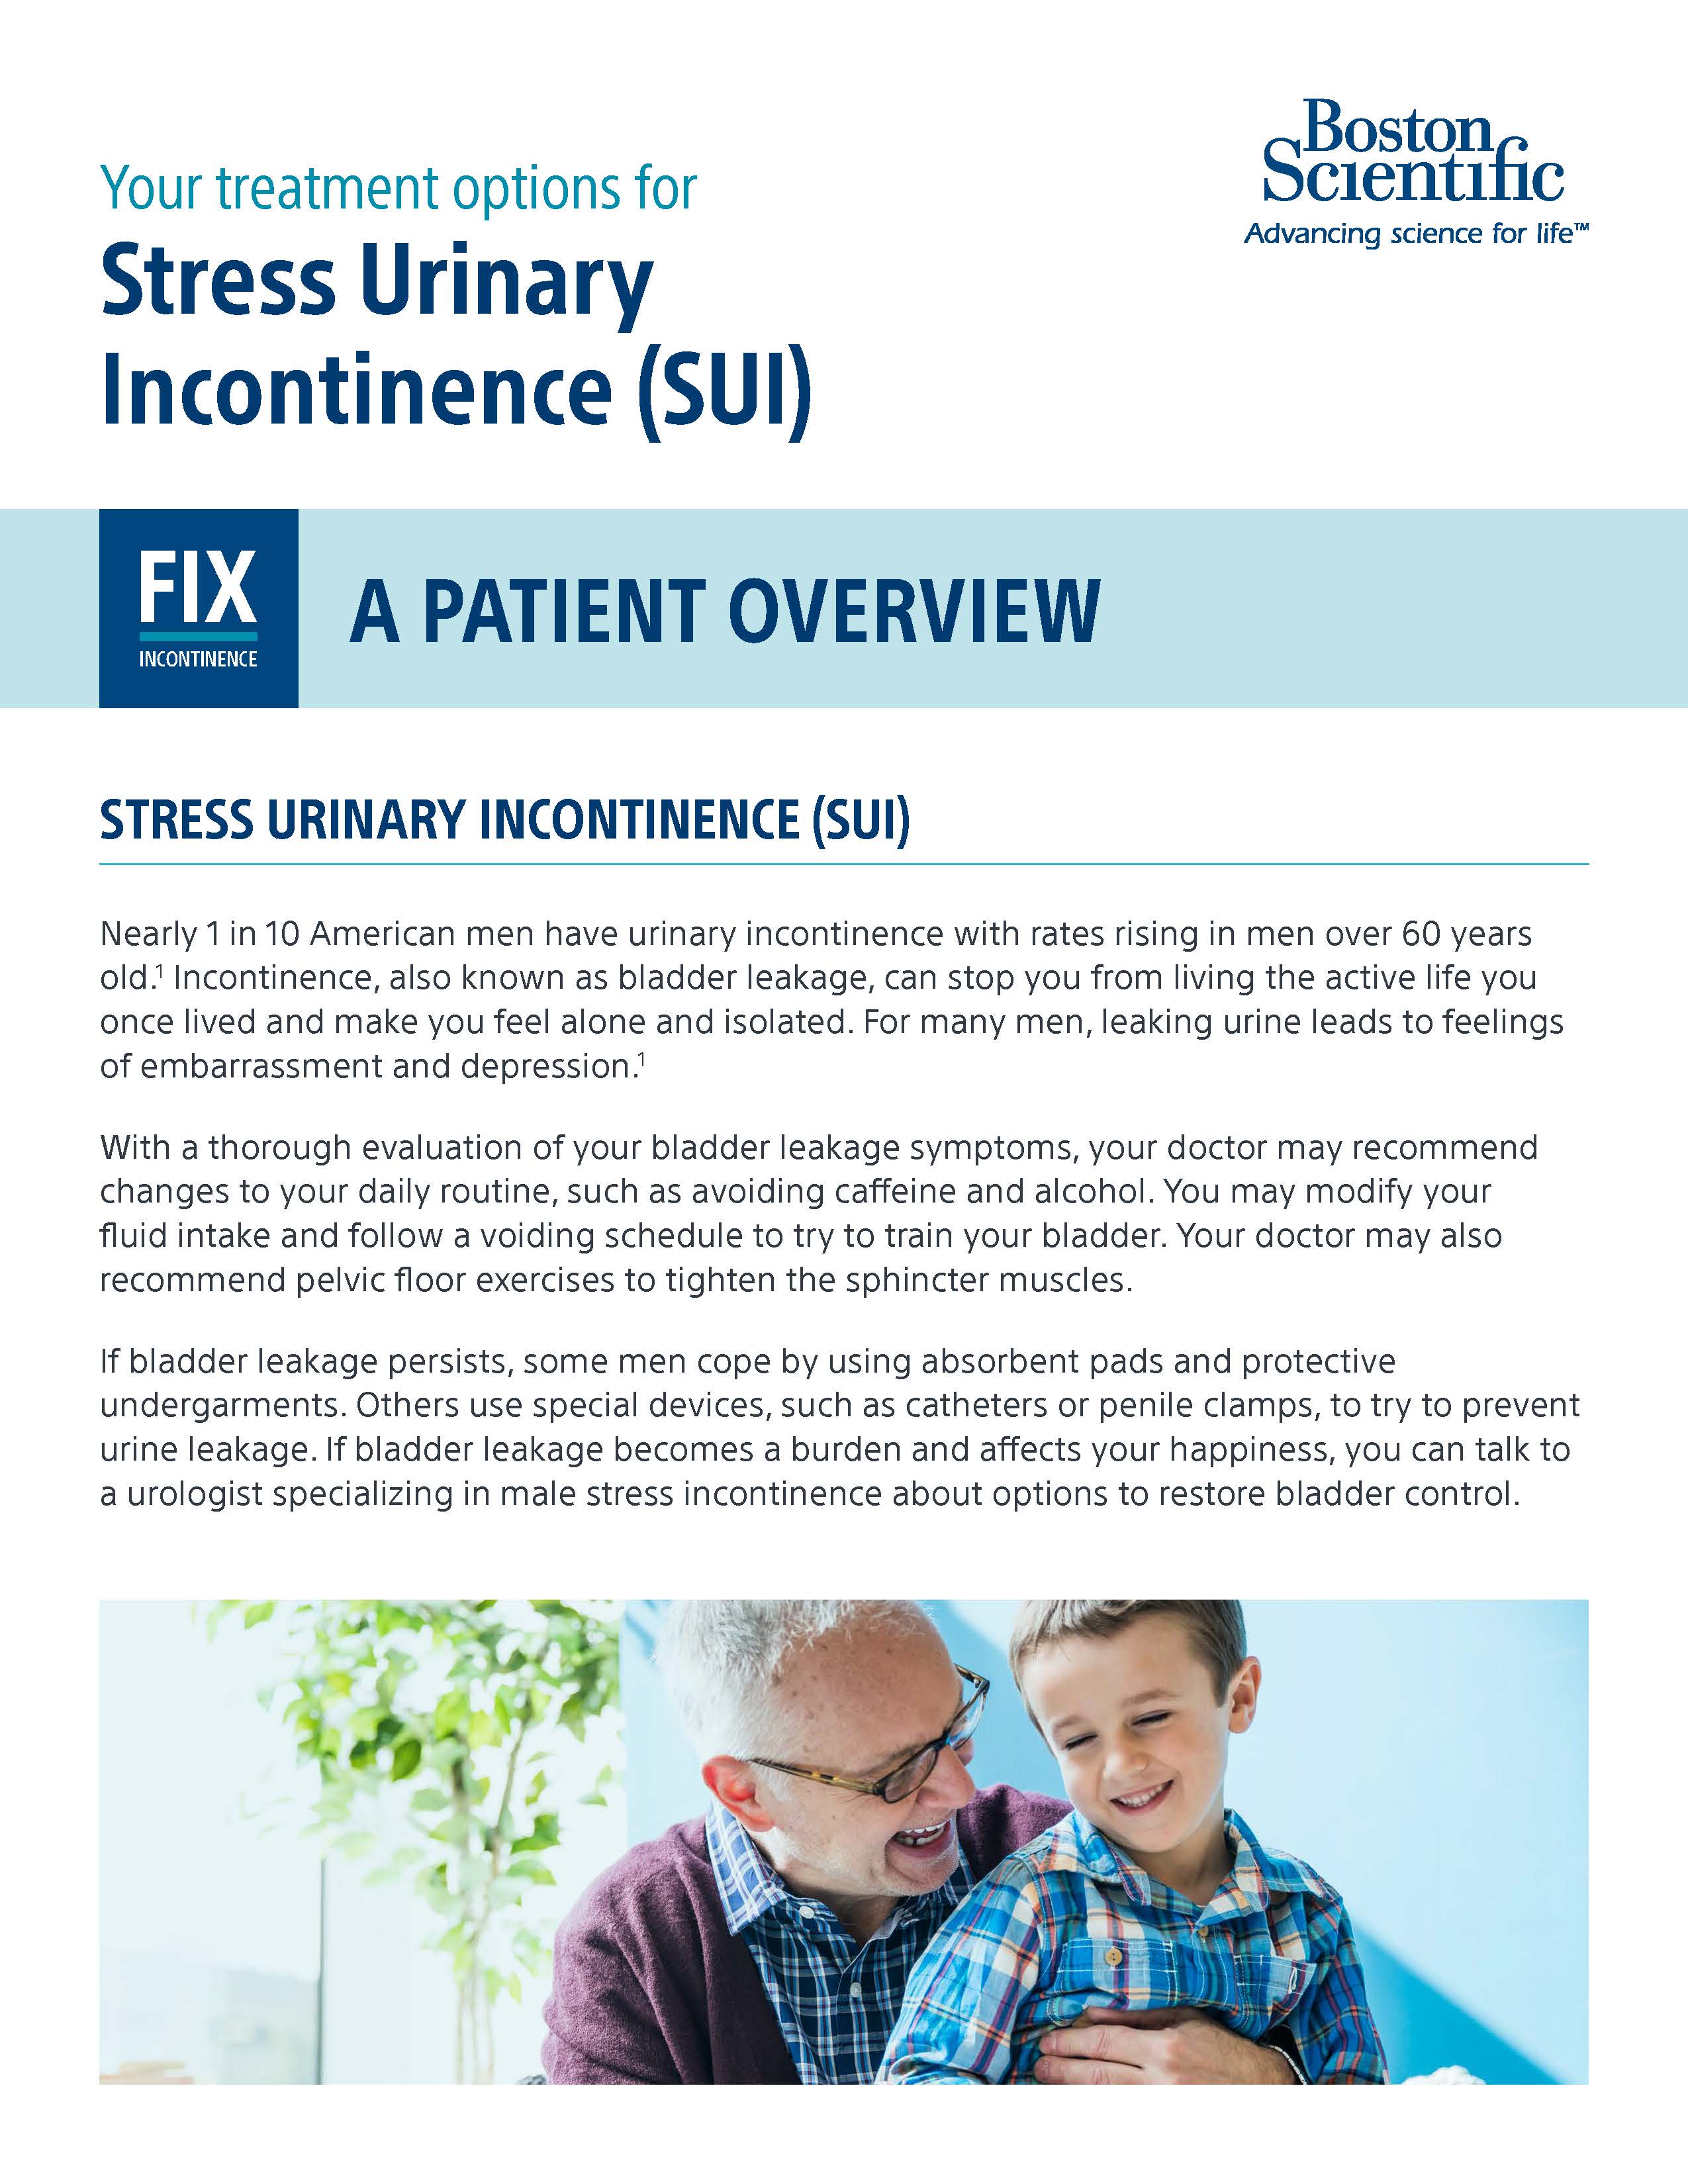 Treatment Options for SUI – Patient Education Brochure